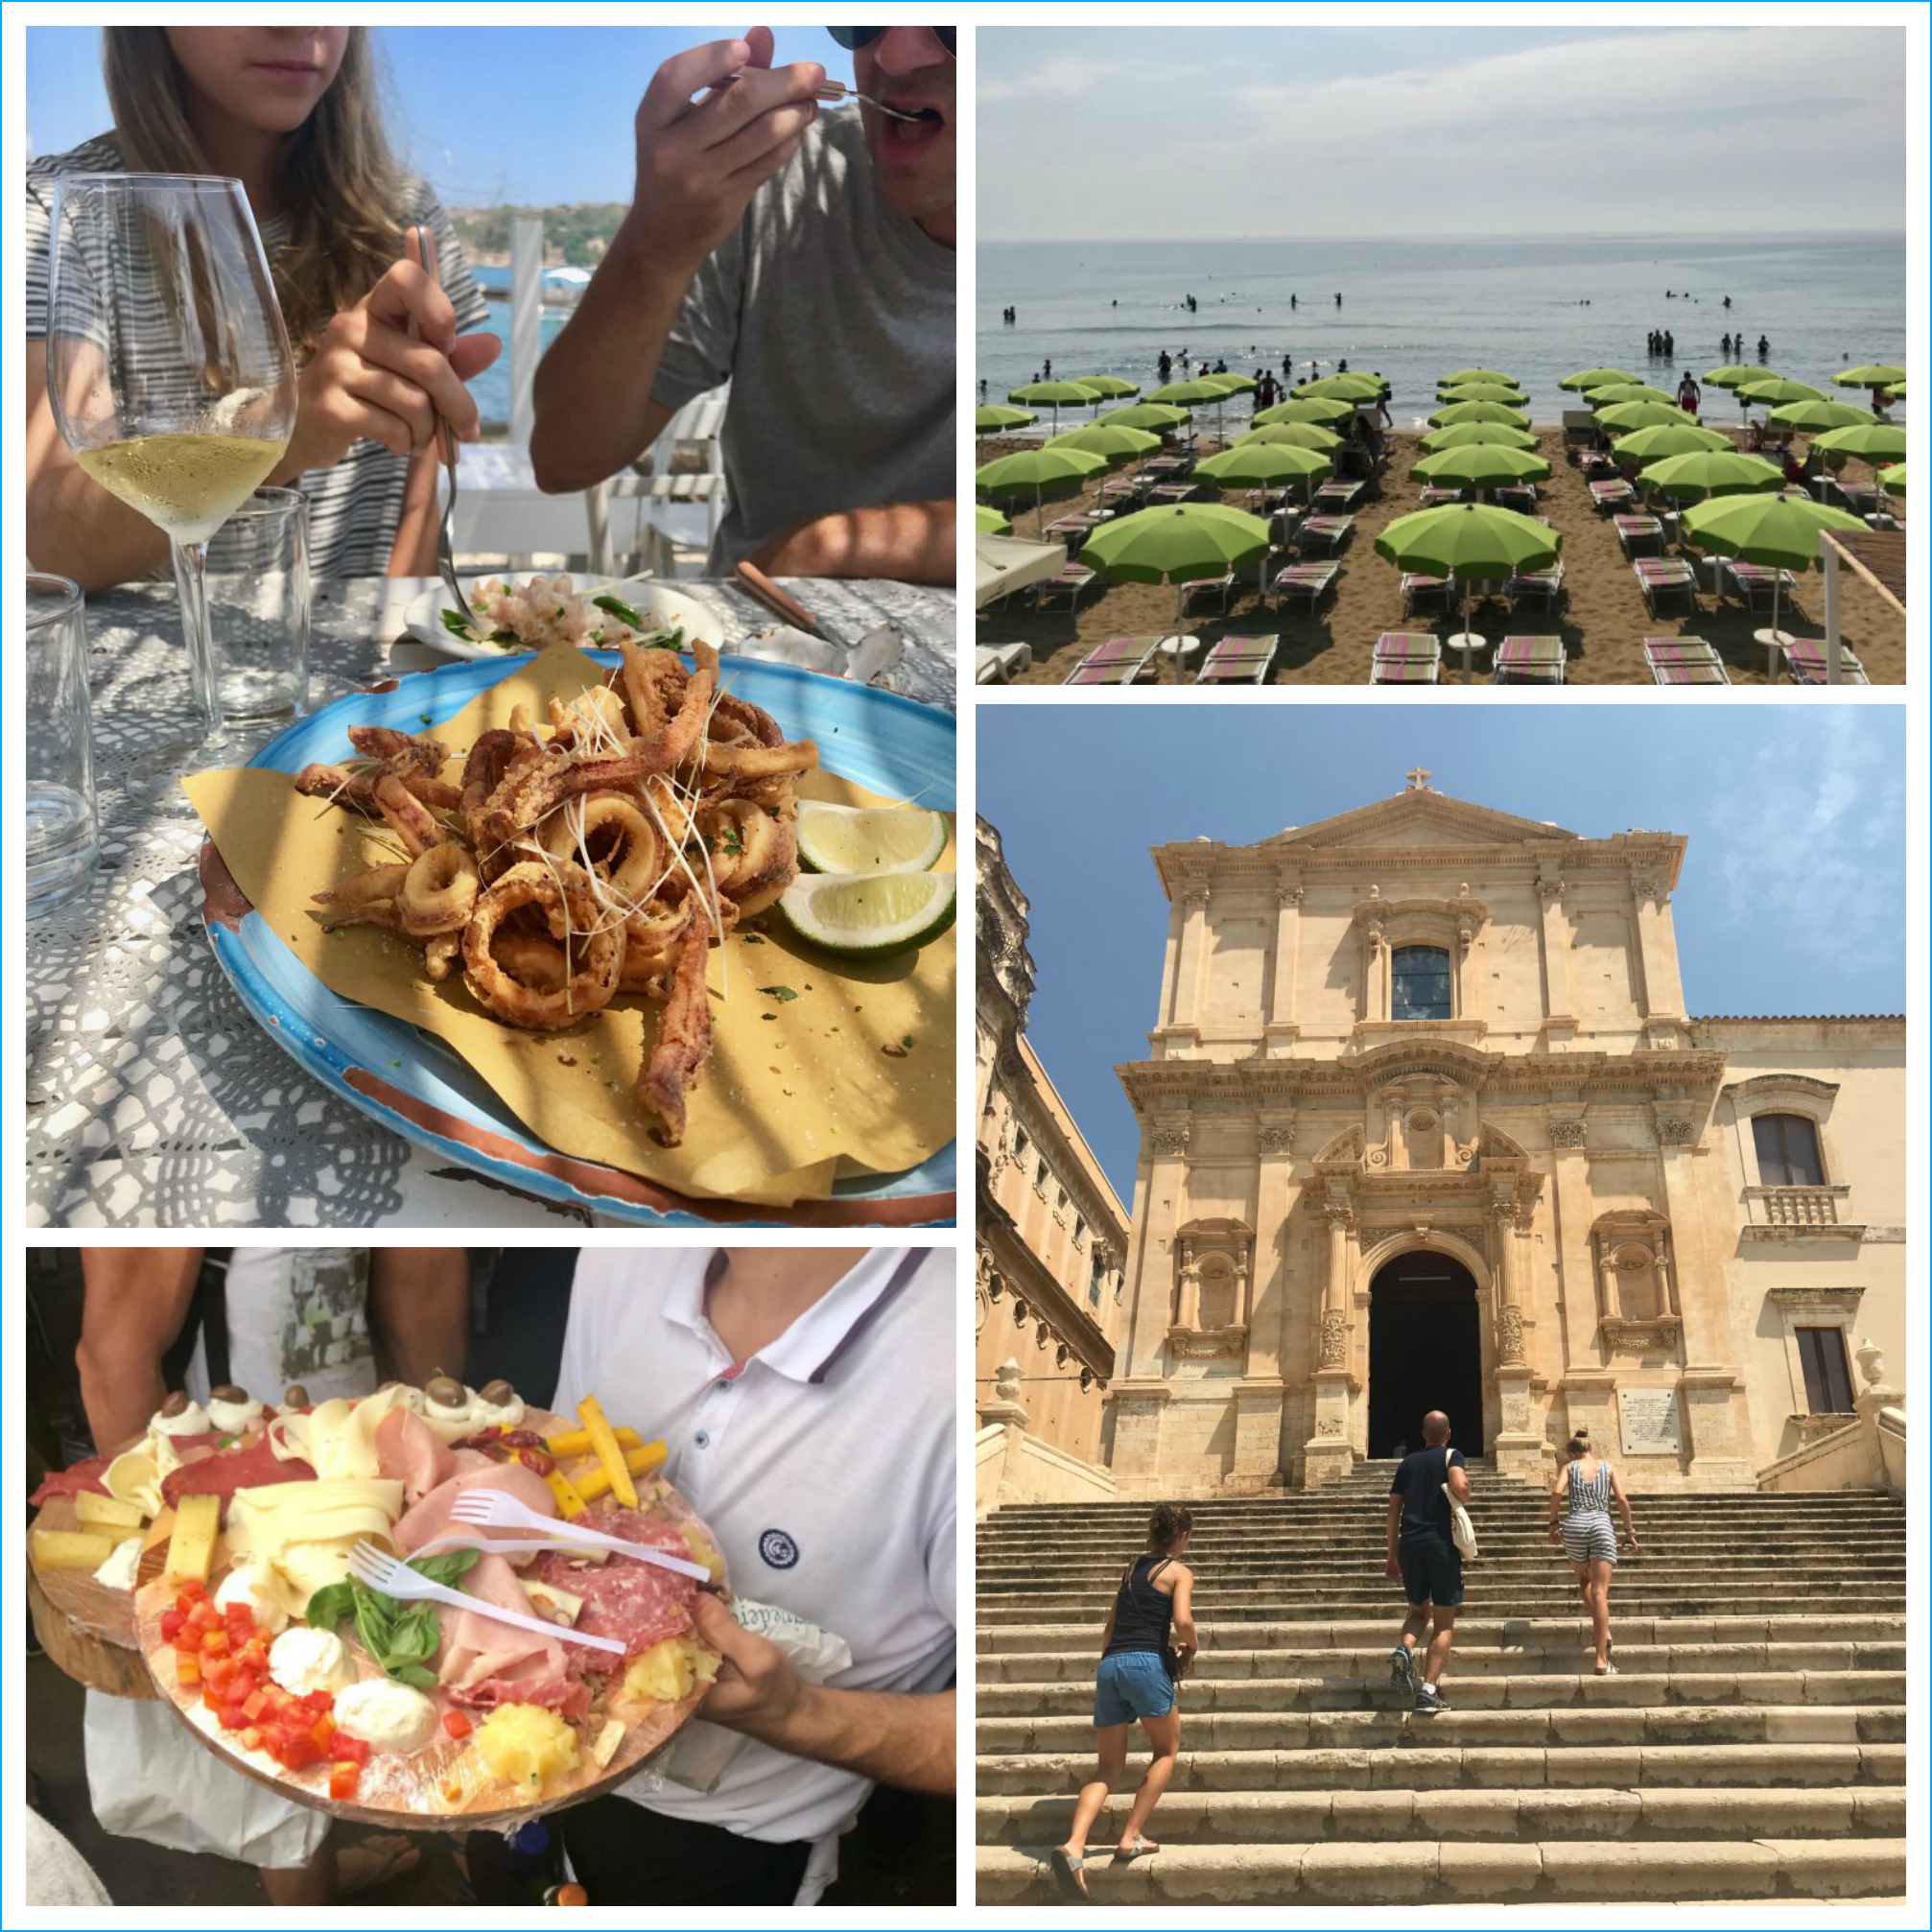 http://www.dinneralovestory.com/wp-content/uploads/2019/01/Sicily-Dinner-A-Love-Story.jpg